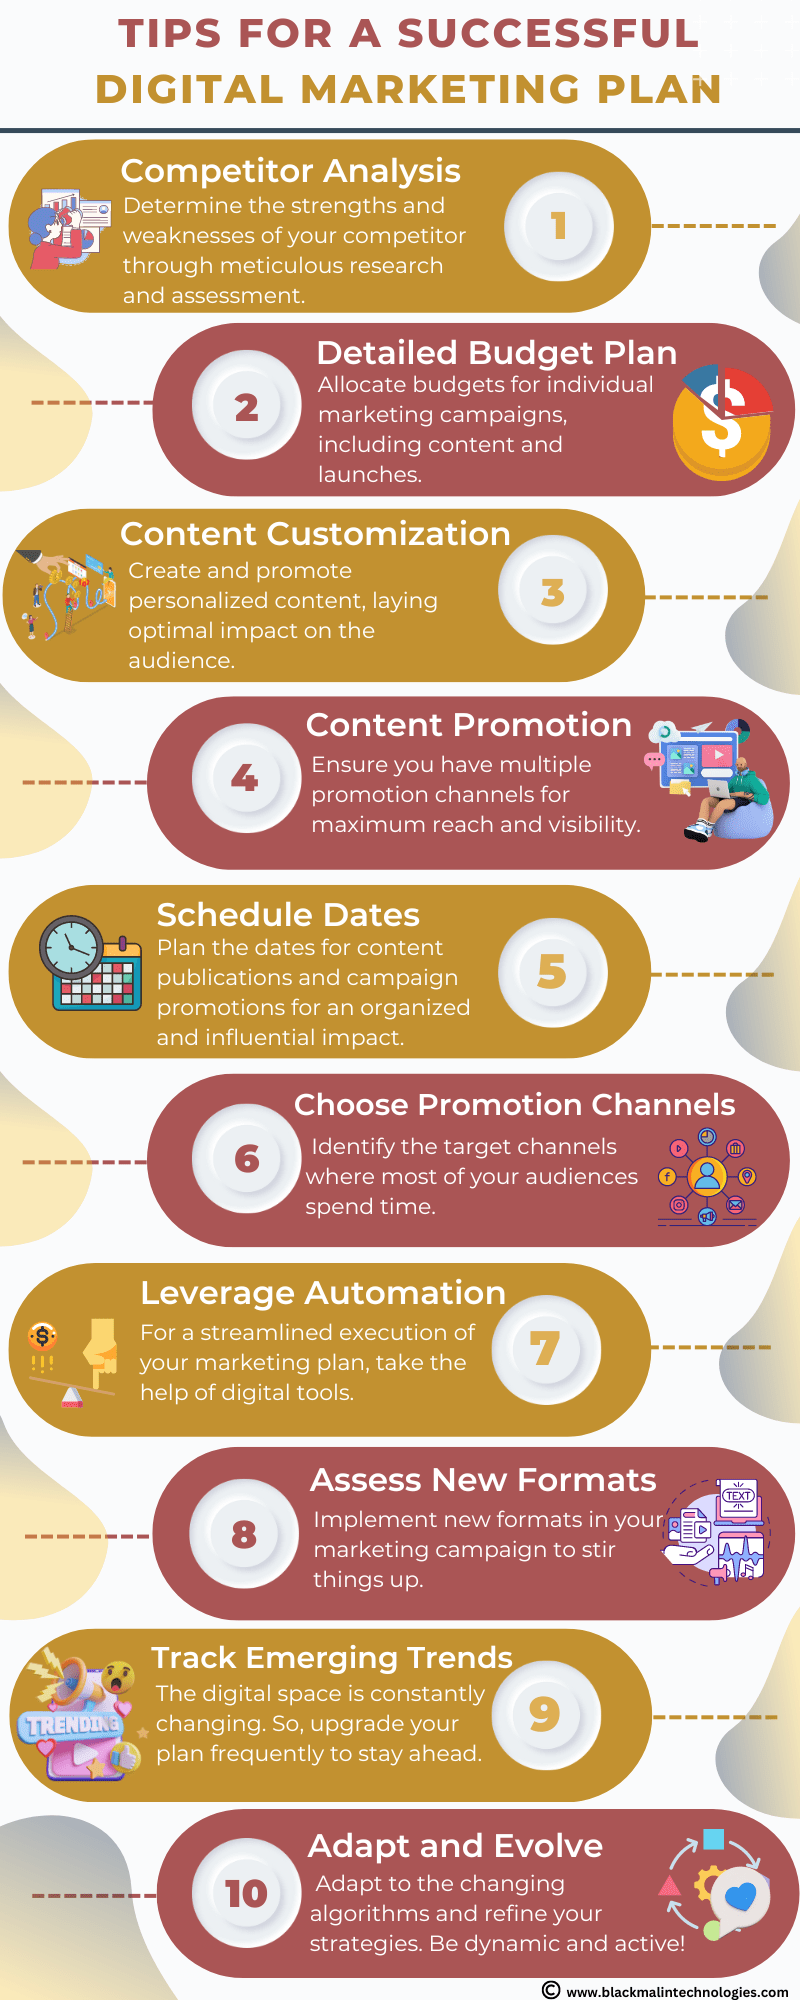 digital marketing plan tips